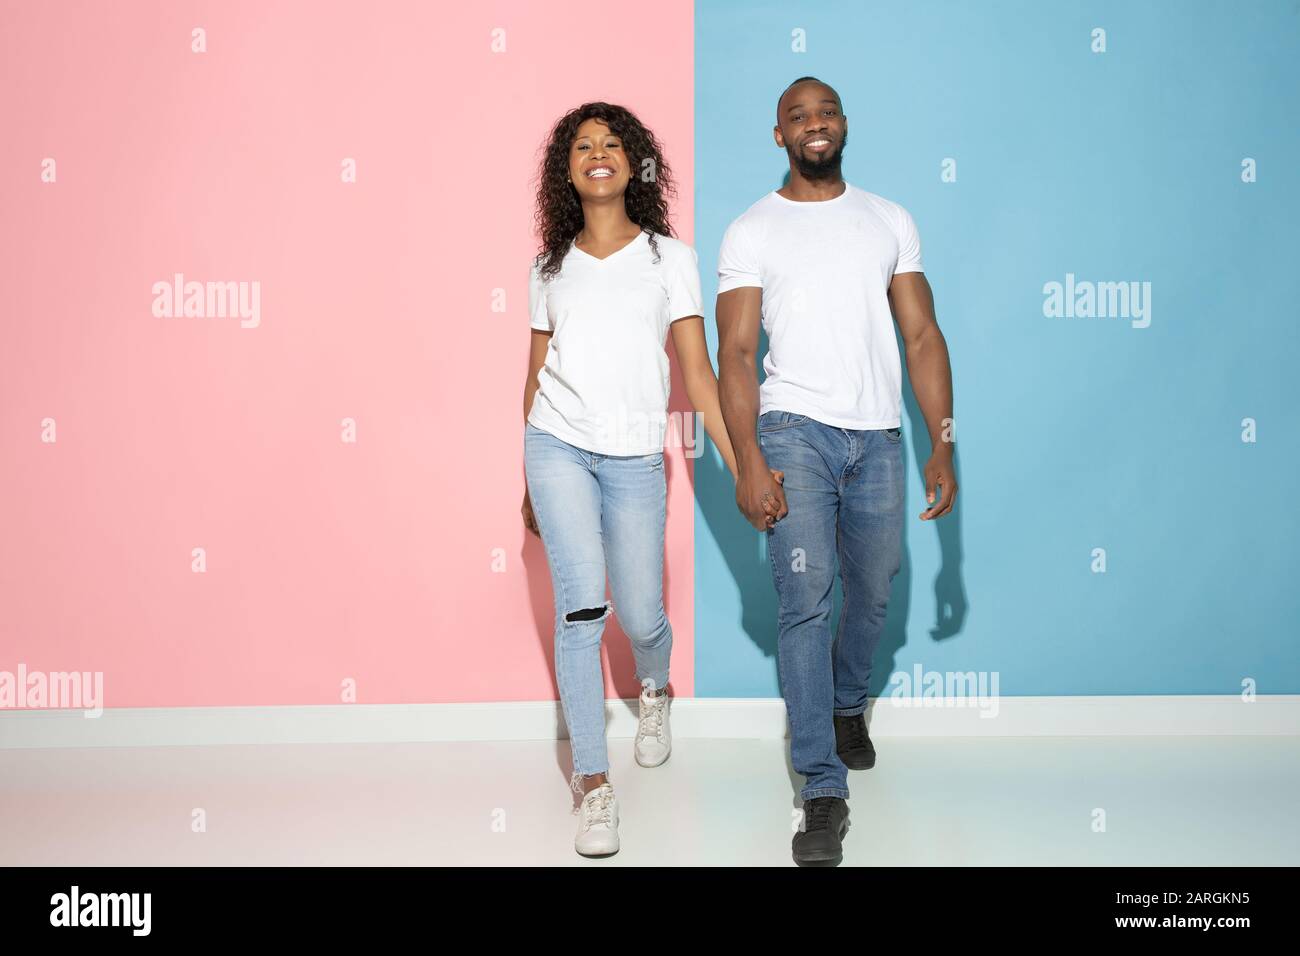 Romantisches gehen. Junger emotionaler Mann und Frau in legerer Kleidung auf pinkfarbenem und blauem bicolored Hintergrund. Konzept der menschlichen Emotionen, Gesichtsausweisung, Beziehungen, Anzeige. Wunderschönes afro-amerikanisches Paar. Stockfoto